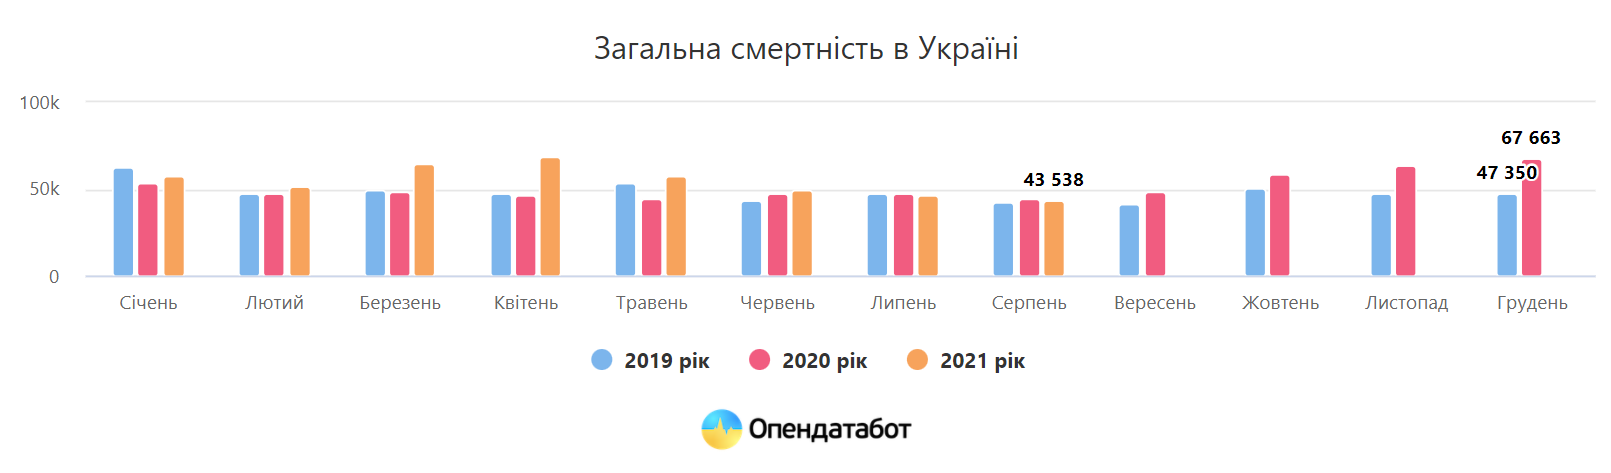 Общая смертность в Украине 2019-2021 годов/Инфографика: opendatabot.ua/Изображение кликабельное